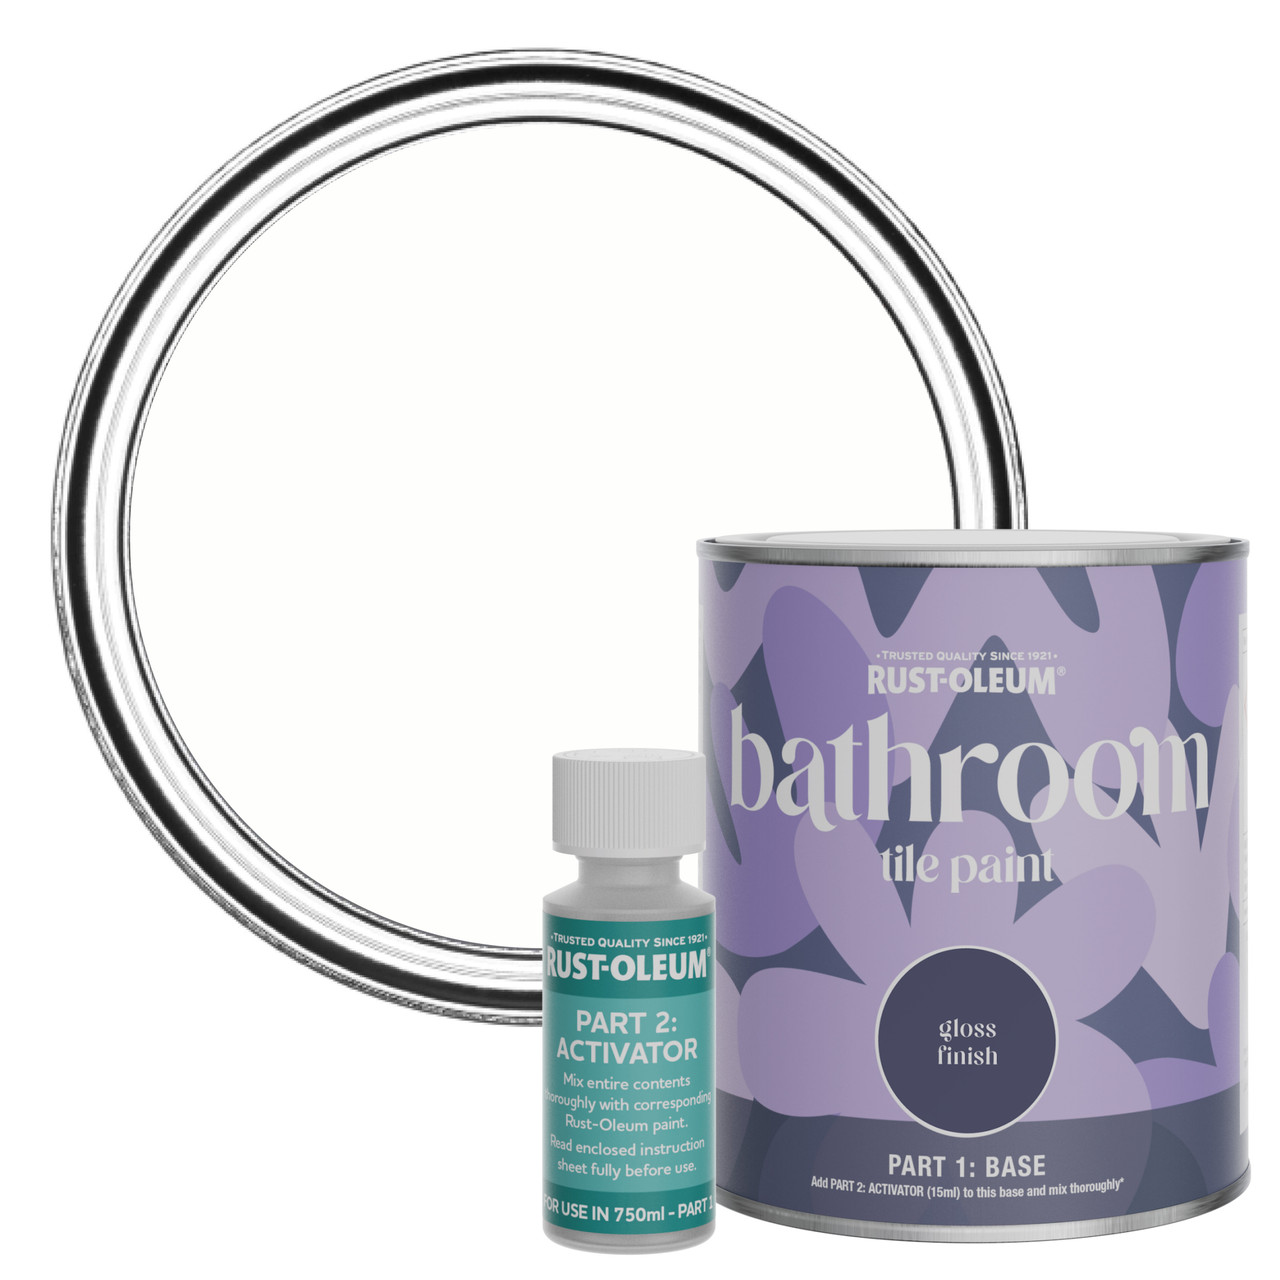 Rust-Oleum Bathroom Tile Paint, Gloss Finish - Chalk White 750ml -